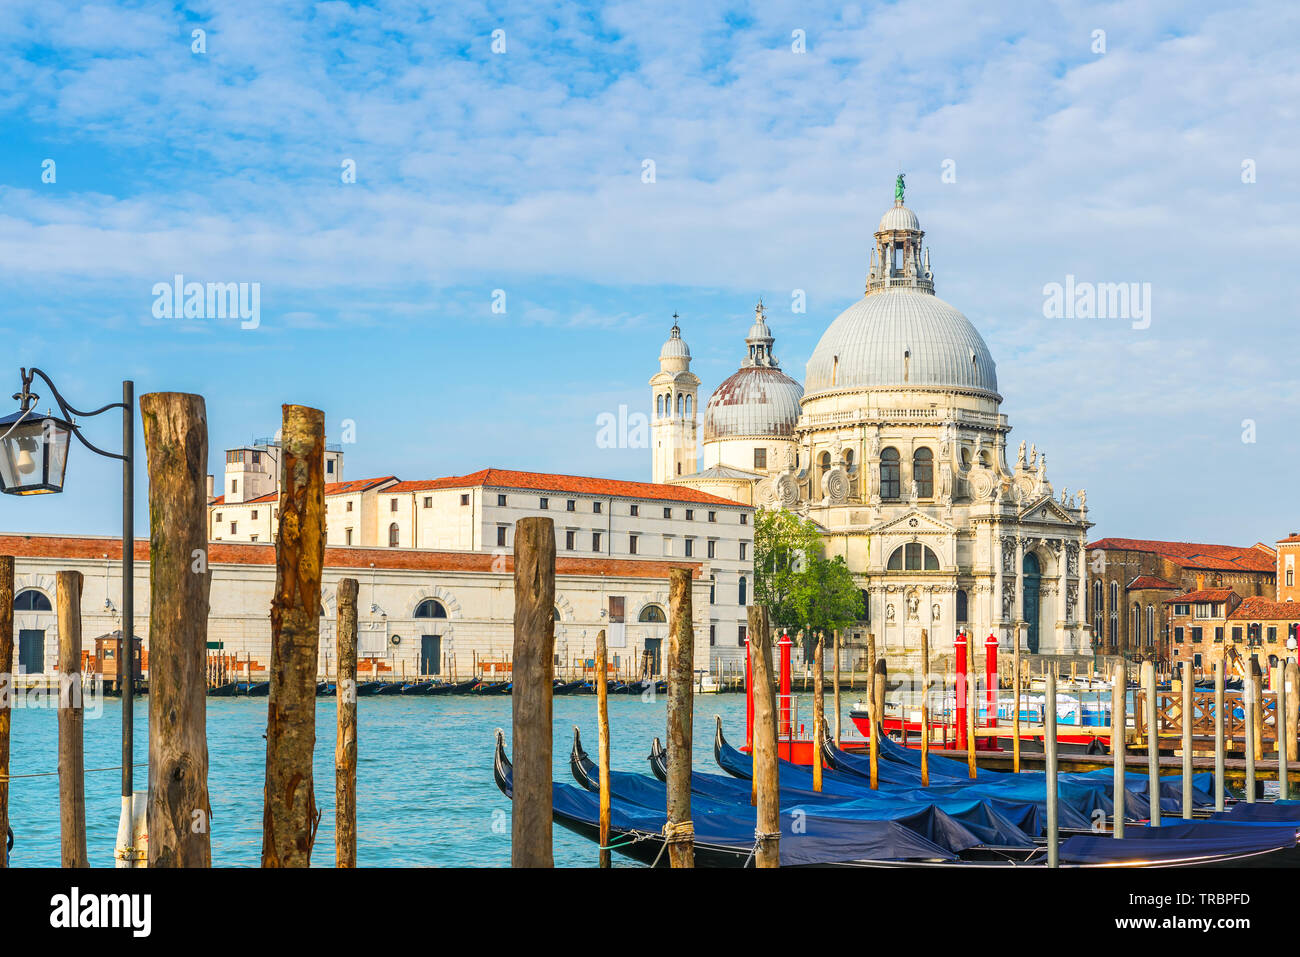 Bellissima vista del Canal Grande con la sua storica Basilica di Santa Maria della Salute in background e delle gondole in una giornata di sole a Venezia, Italia Foto Stock